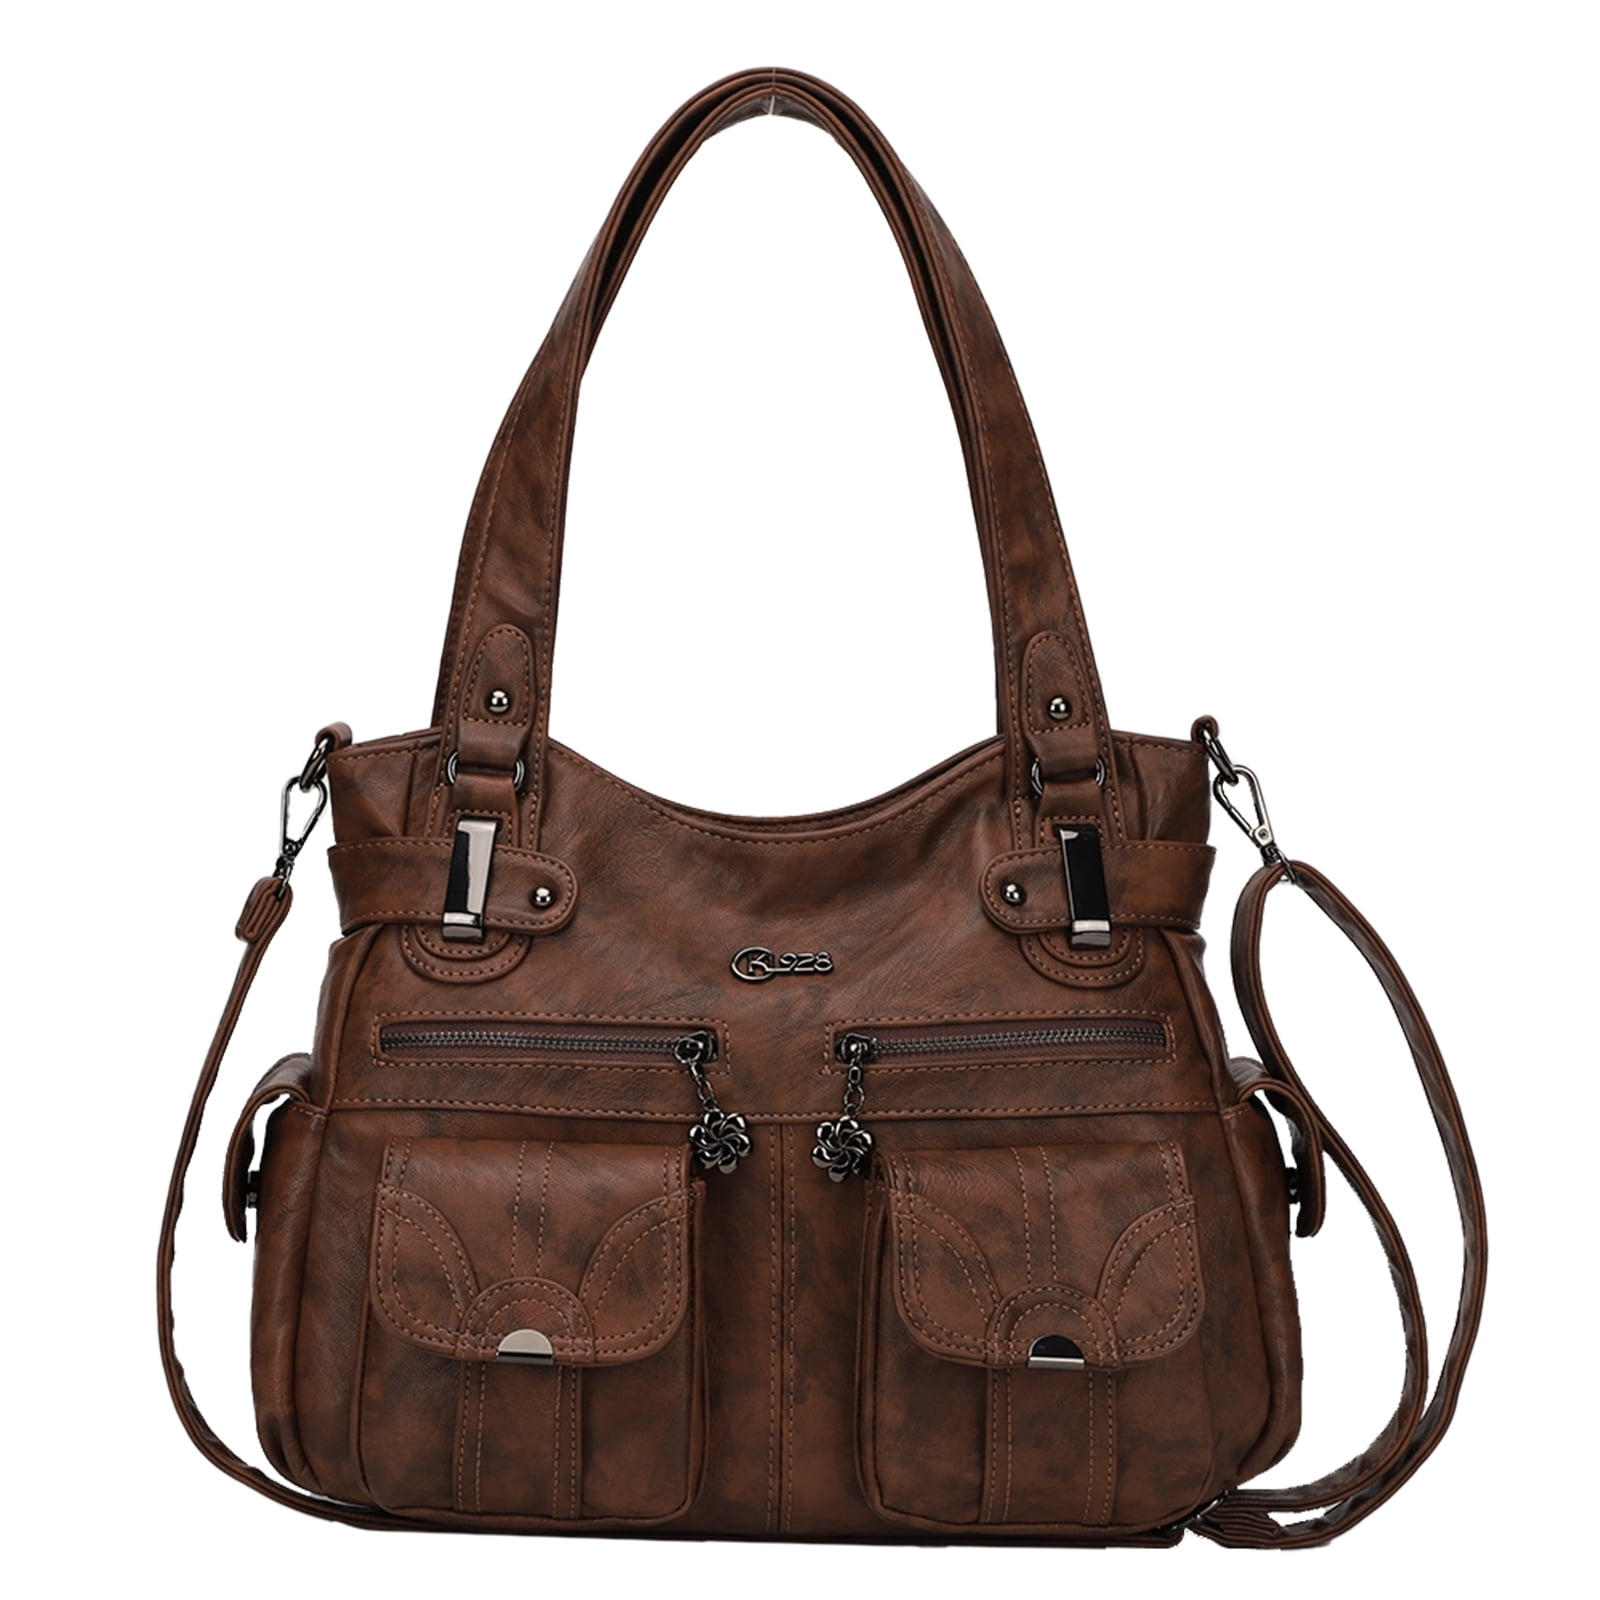 KL928 Women Multi Pocket Handbag Purse Hobo Crossbody Bag for Work ...